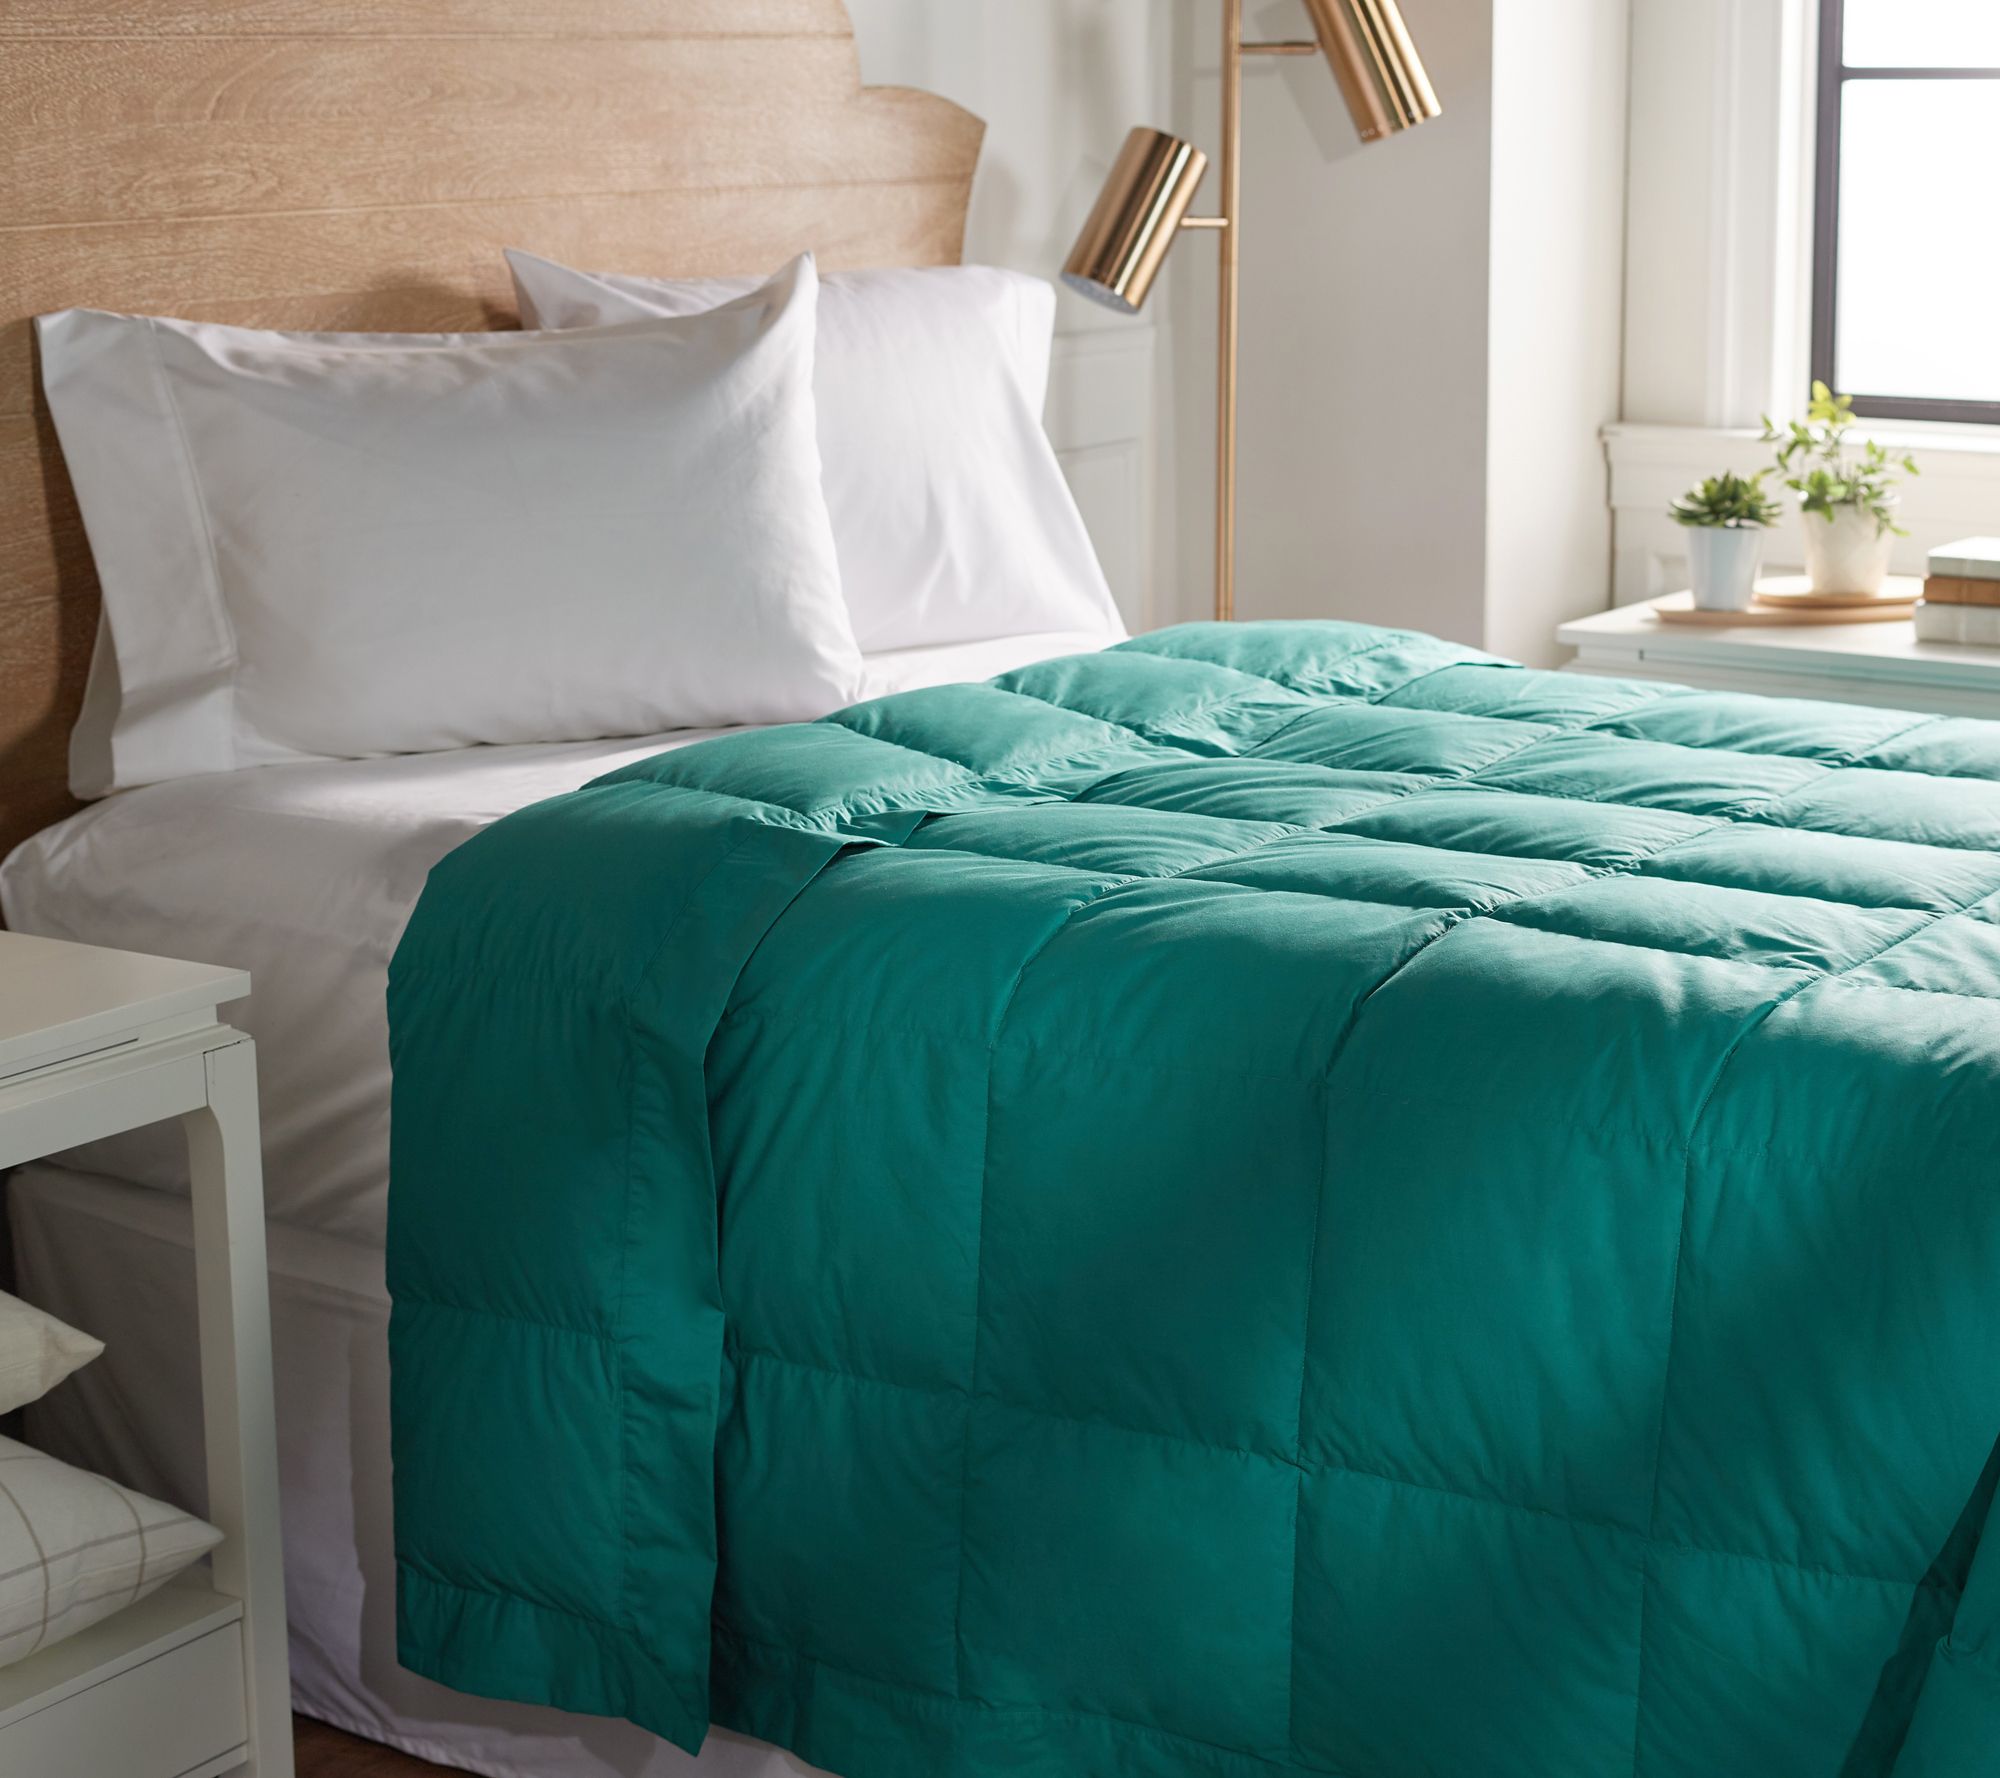 Unique Bargains Household Blanket Pillows Quilts Clothes Zip Nylon